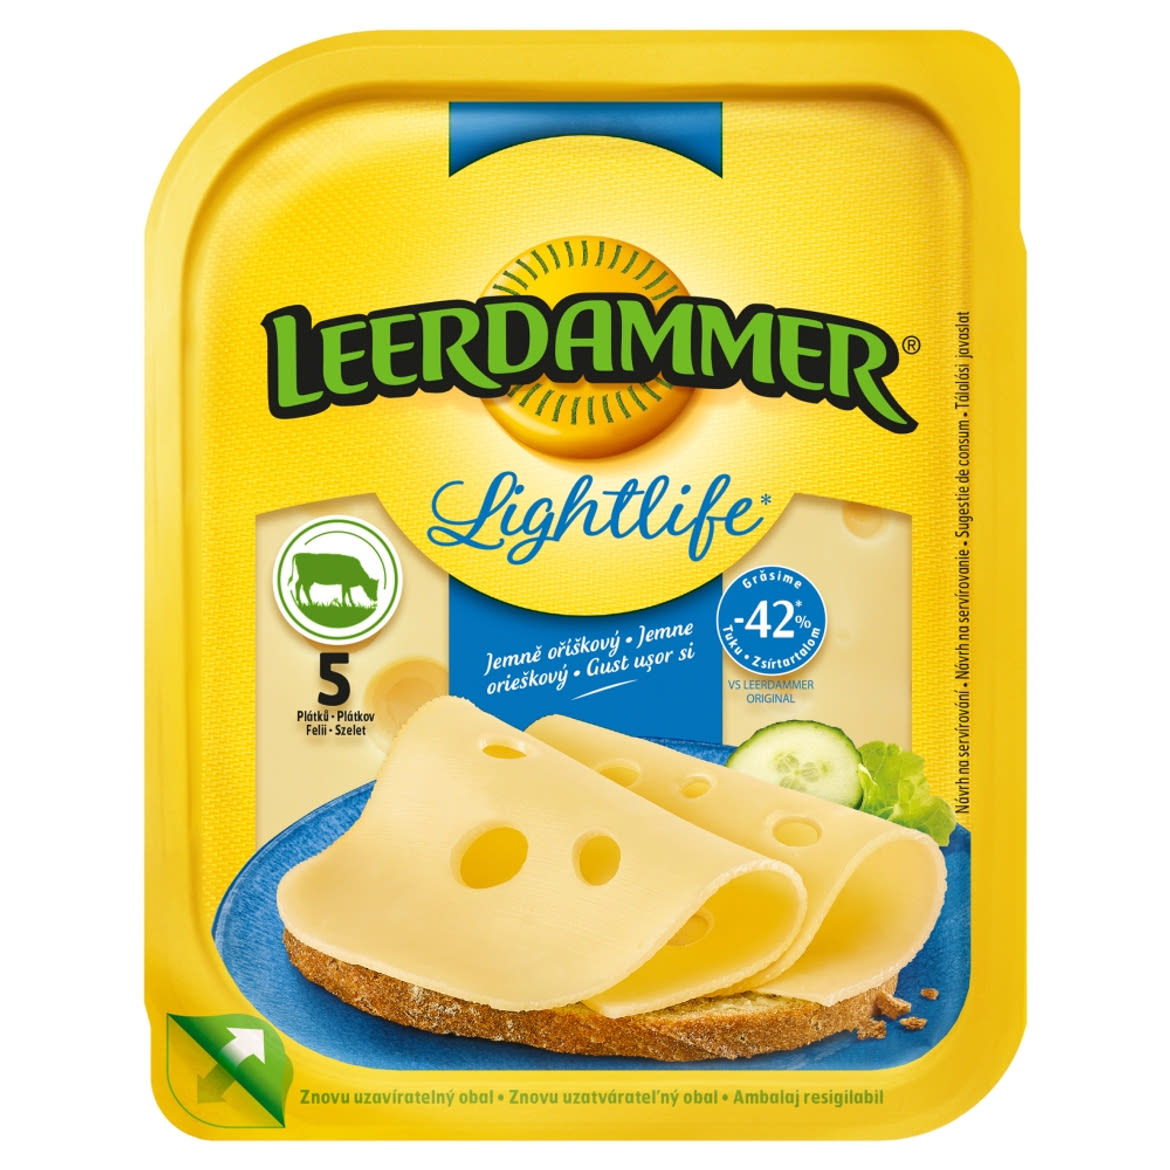 Leerdammer Lightlife laktózmentes félkemény félzsíros szeletelt sajt